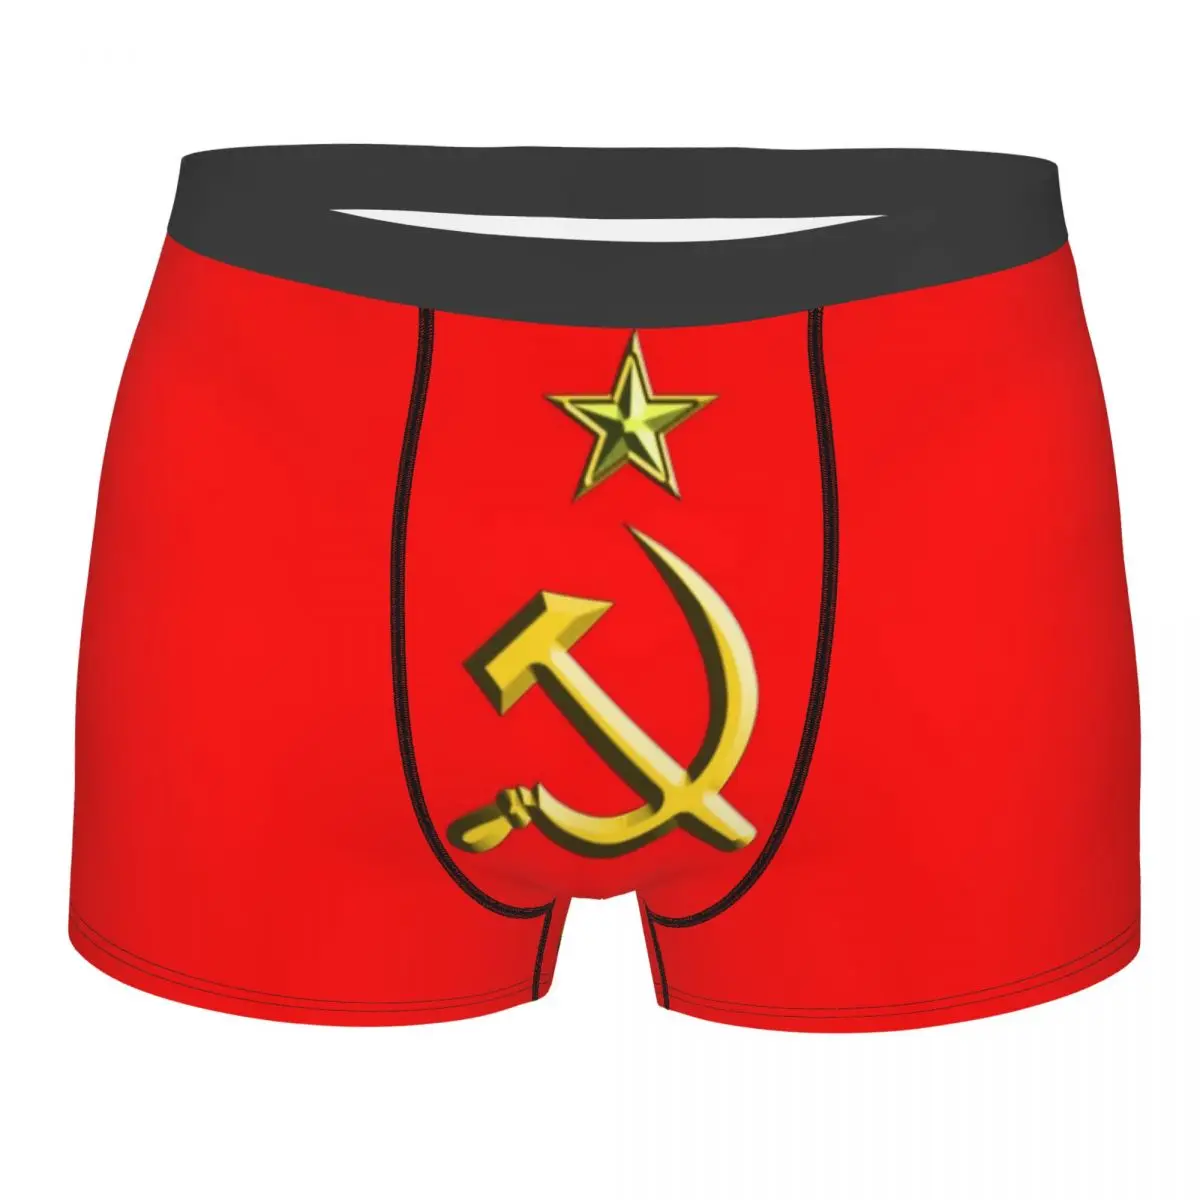 Humor-calzoncillos tipo bóxer para hombre, ropa interior de talla grande, con martillo y hoz, de Rusia, URSS, comunista, Unión soviético, CCCP